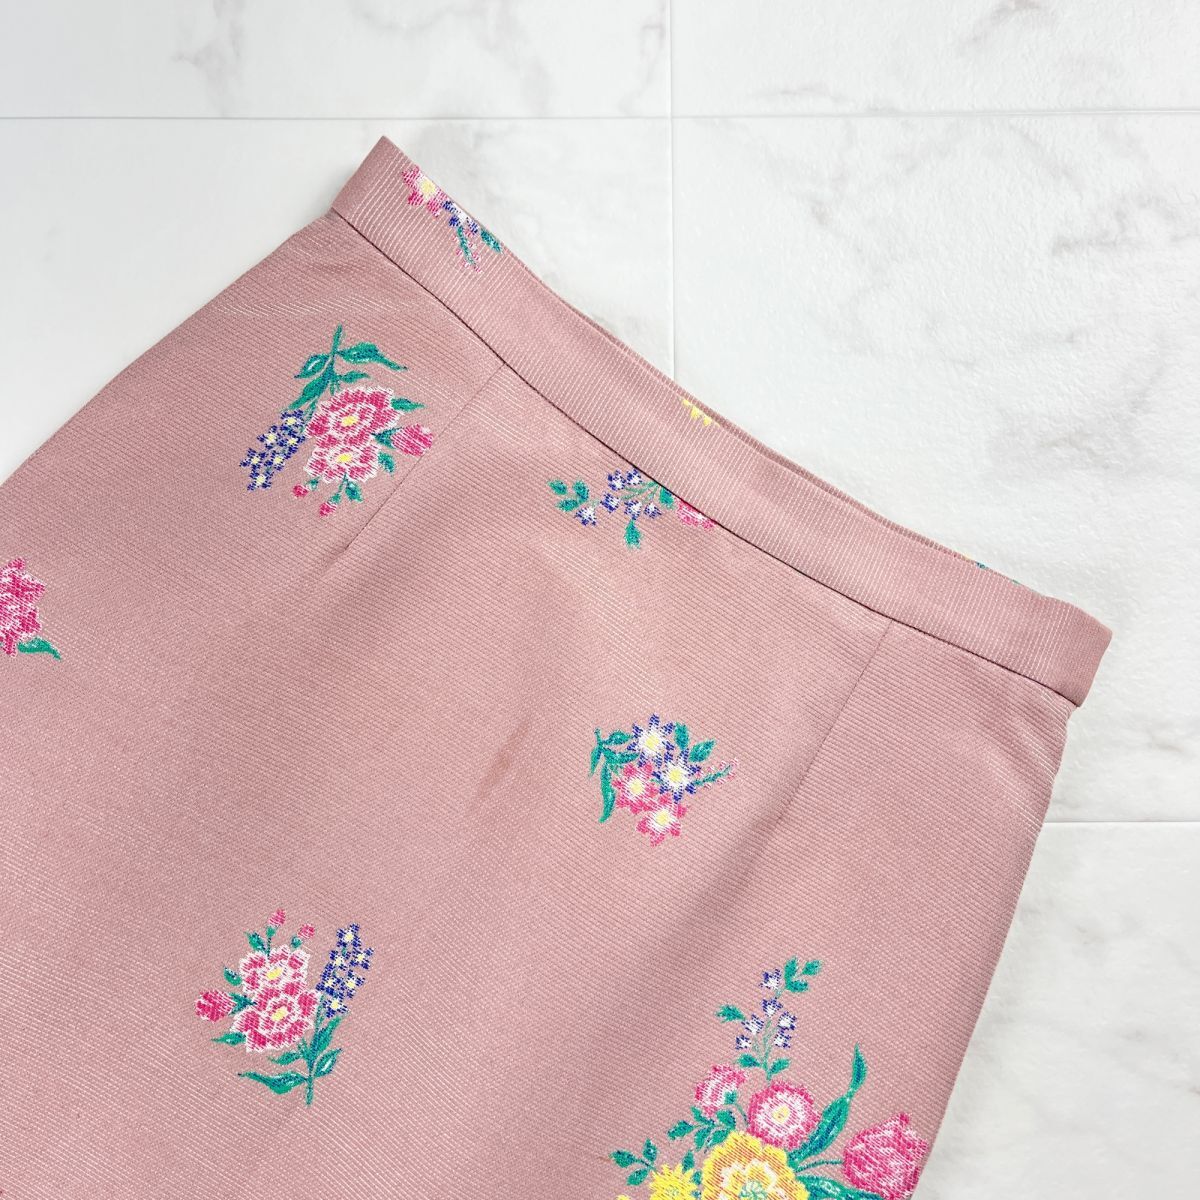 KEITAMARUYAMA Keita Maruyama цветочный принт юбка-трапеция боковой Zip колени длина подкладка есть розовый размер 2*MC1196